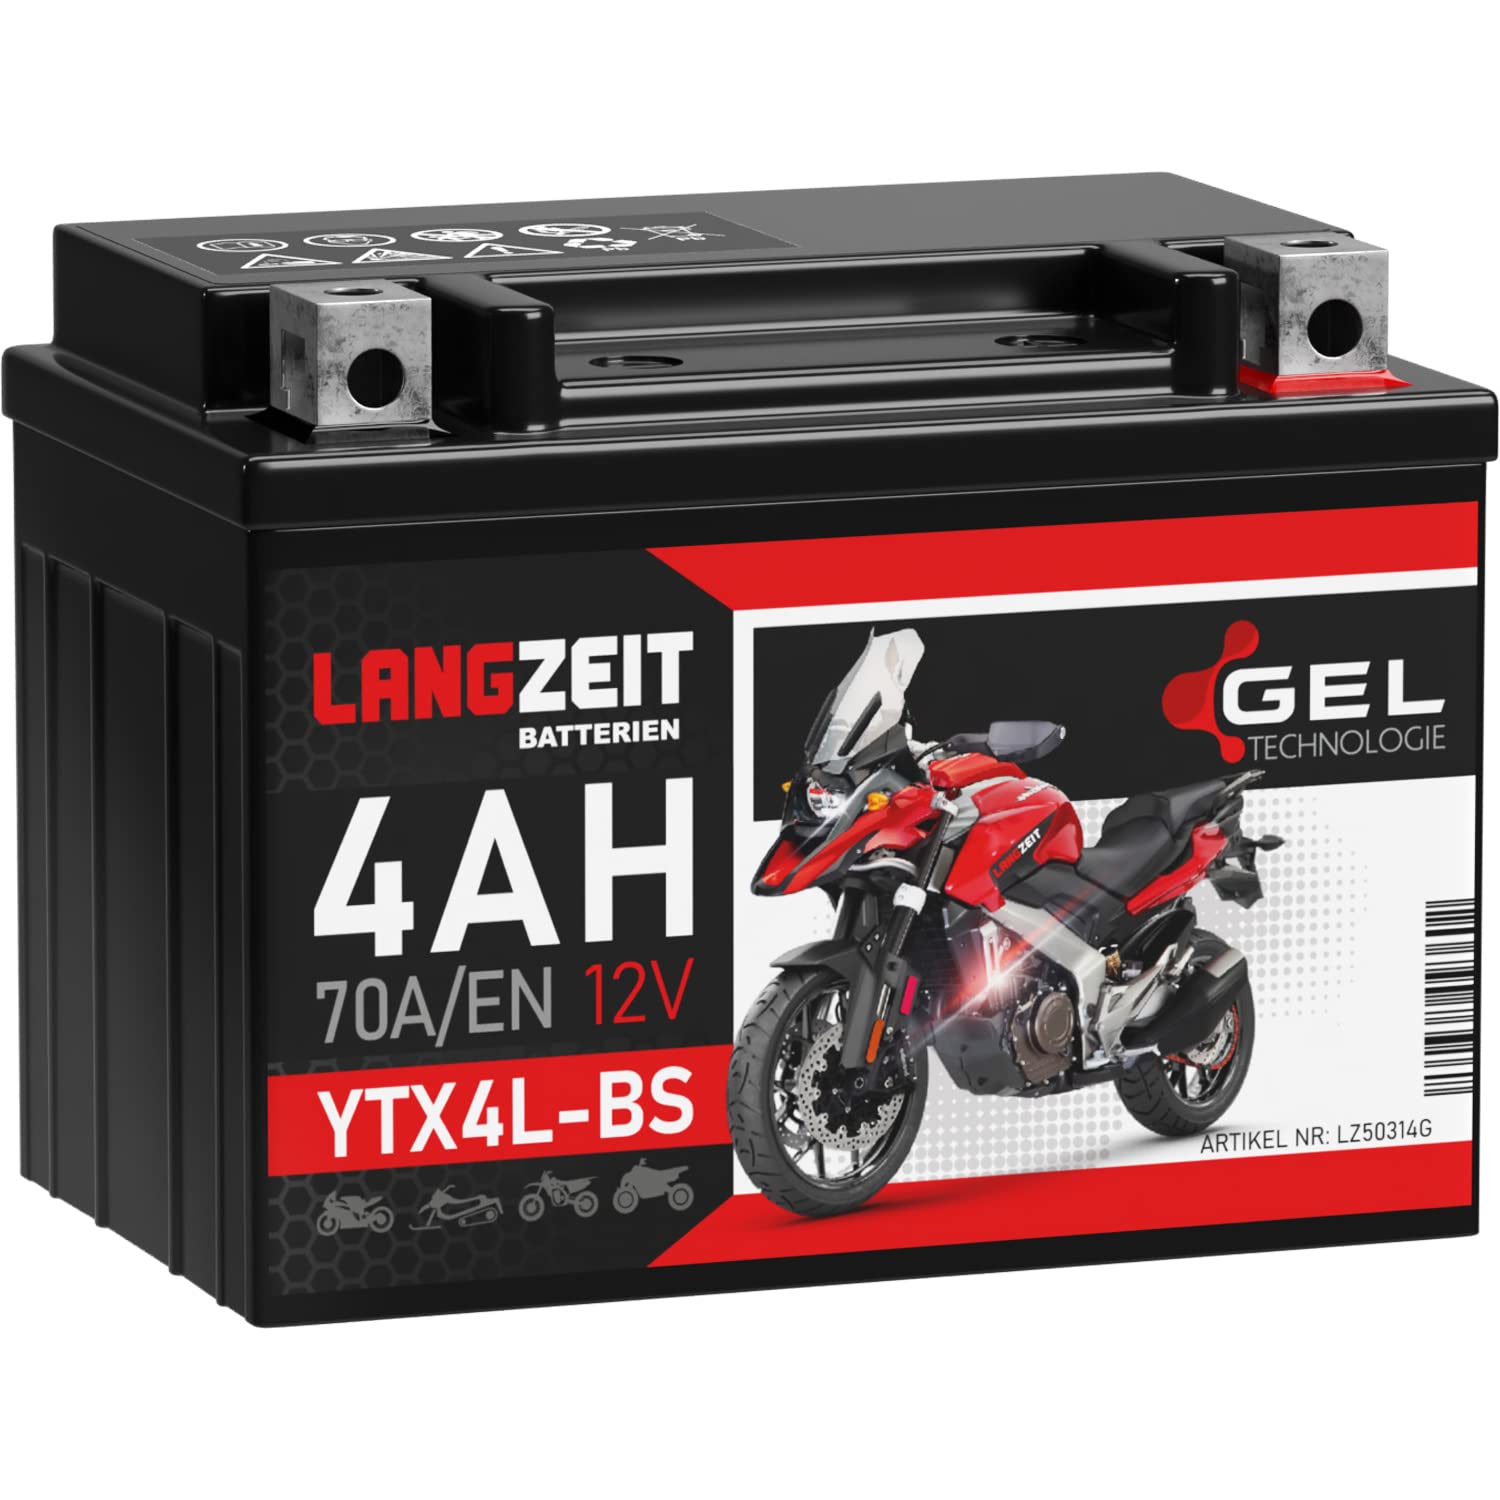 LANGZEIT YTX4L-BS GEL Roller Batterie 12V 4Ah 70A/EN GEL Batterie 12V Motorradbatterie doppelte Lebensdauer entspricht 50314 CTX4L-BS vorgeladen auslaufsicher wartungsfrei von LANGZEIT Batterien